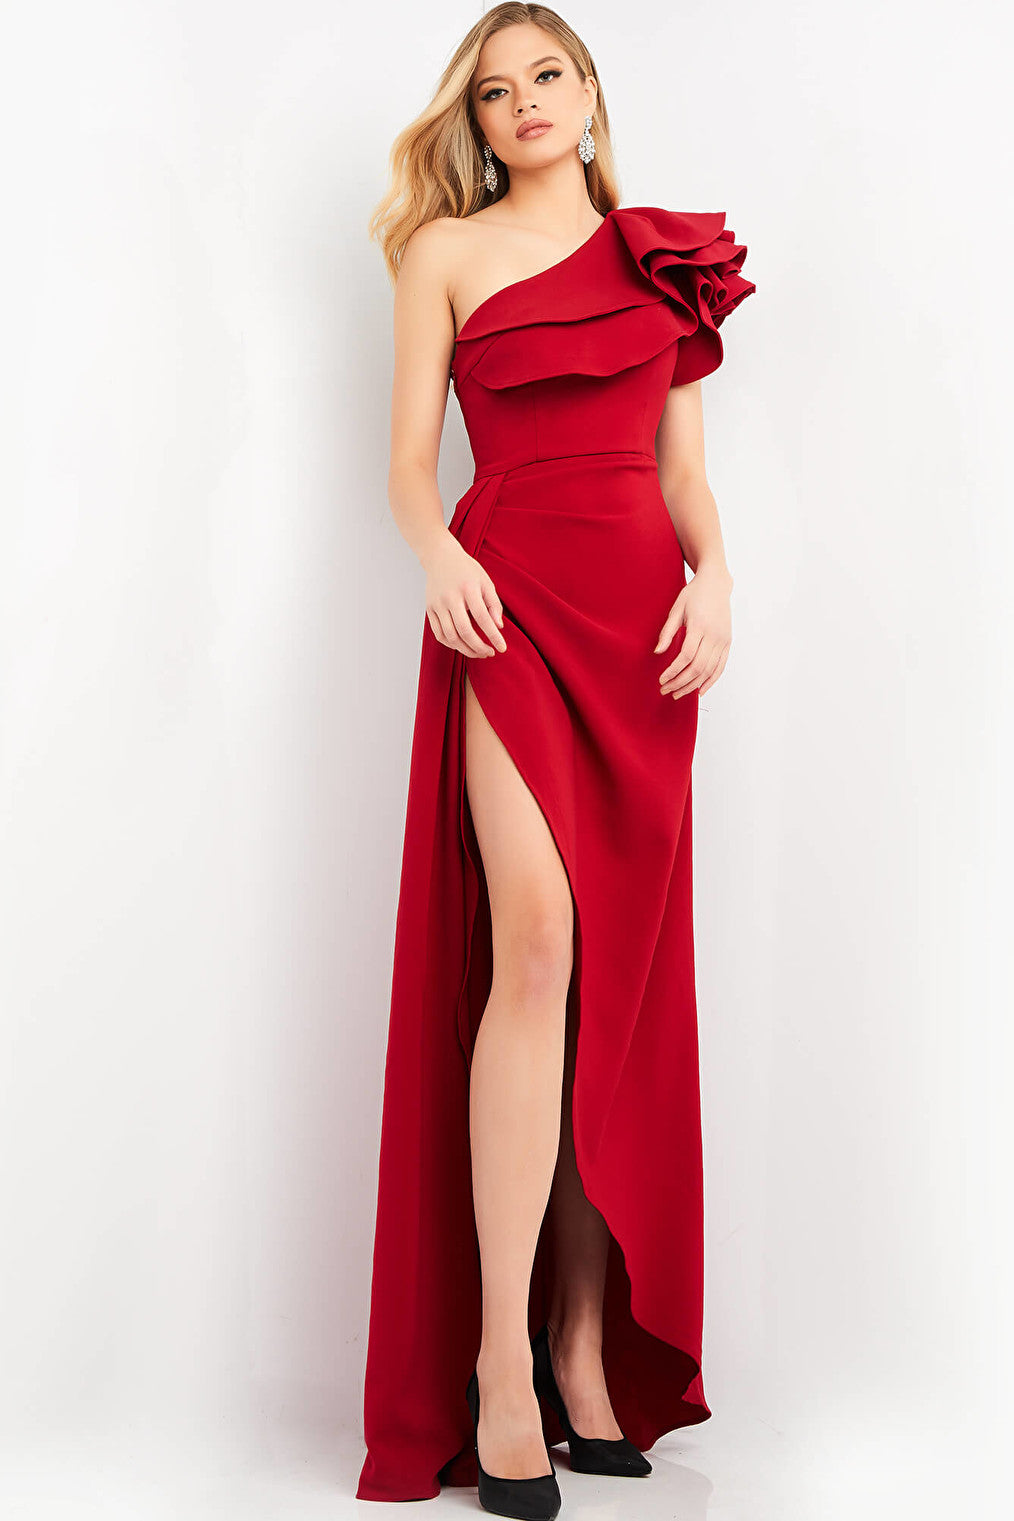 red one shoulder dress 04352